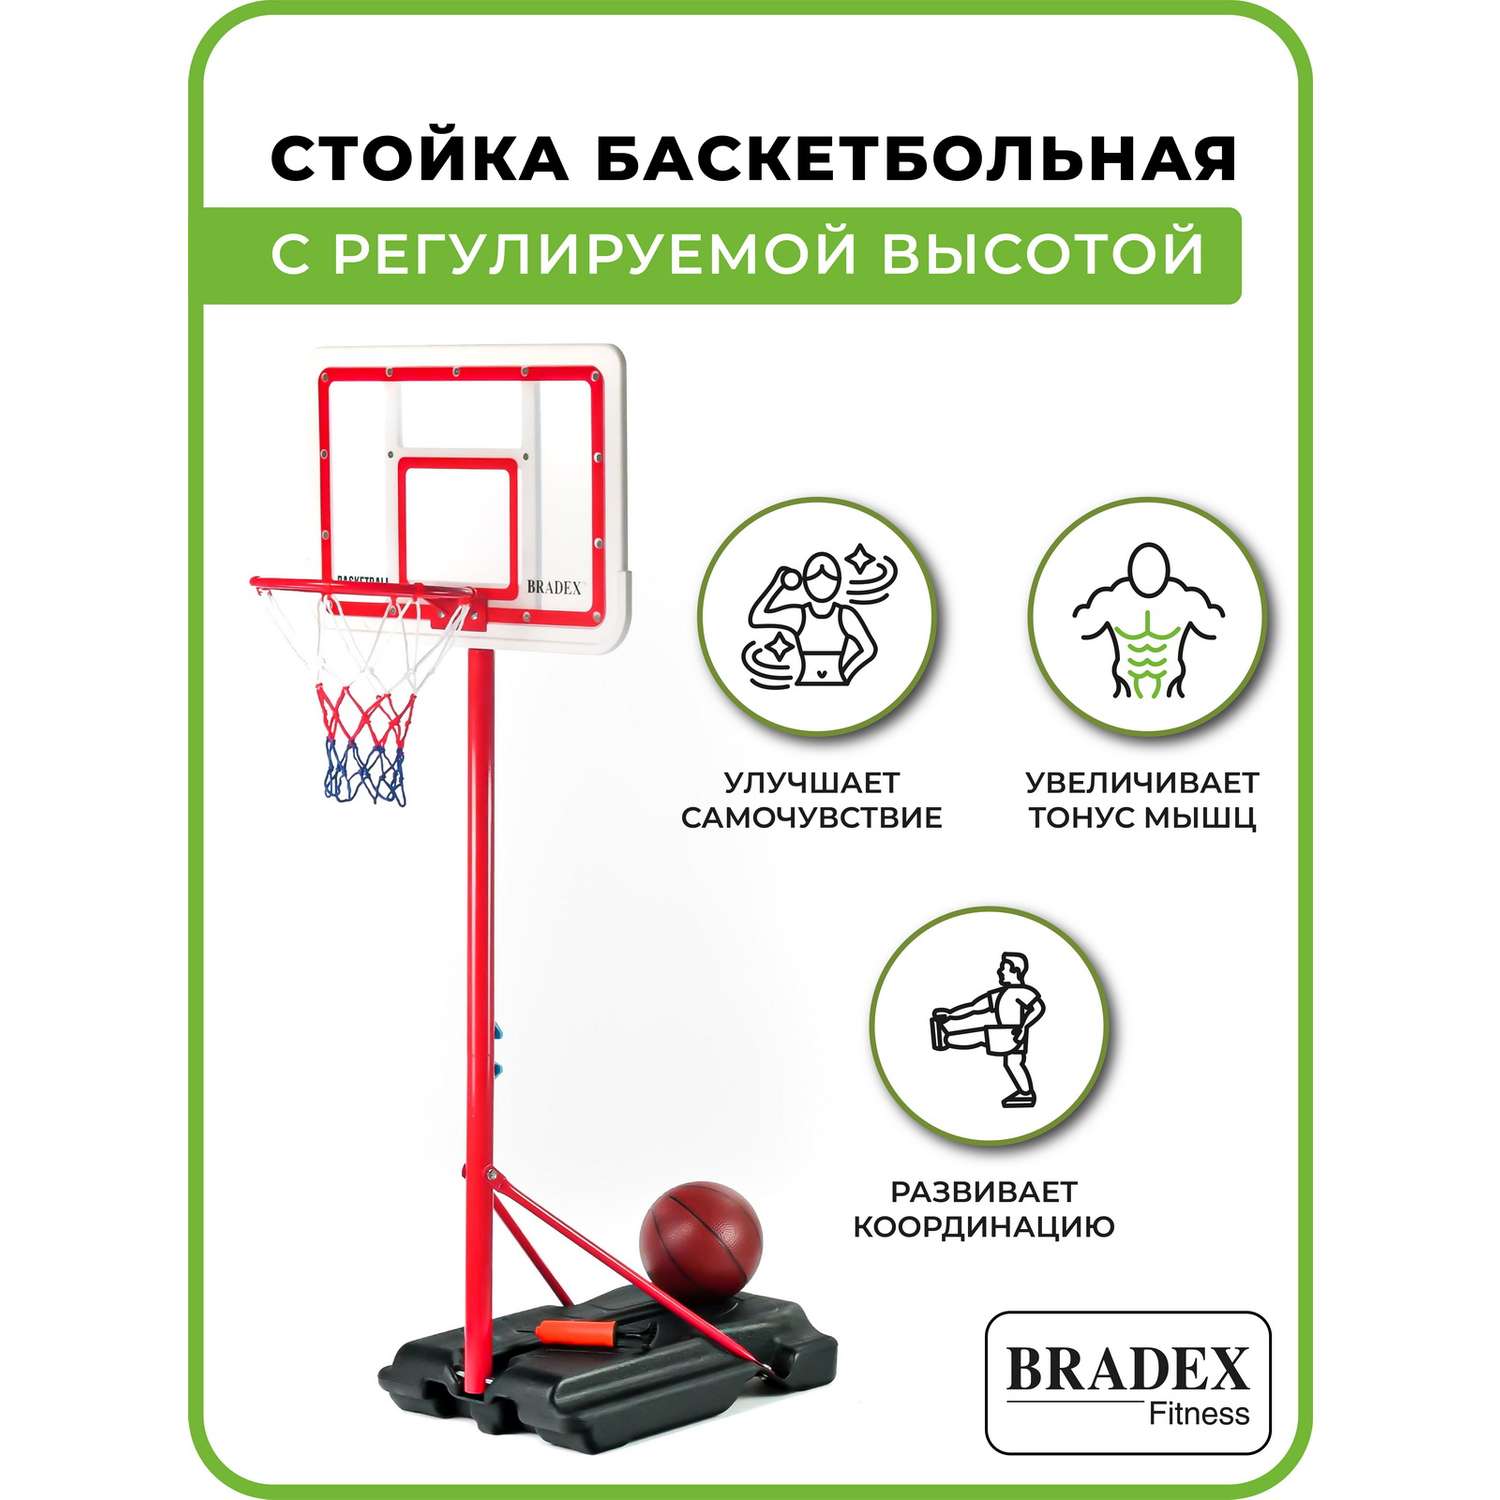 Стойка баскетбольная Bradex с регулируемой высотой - фото 4